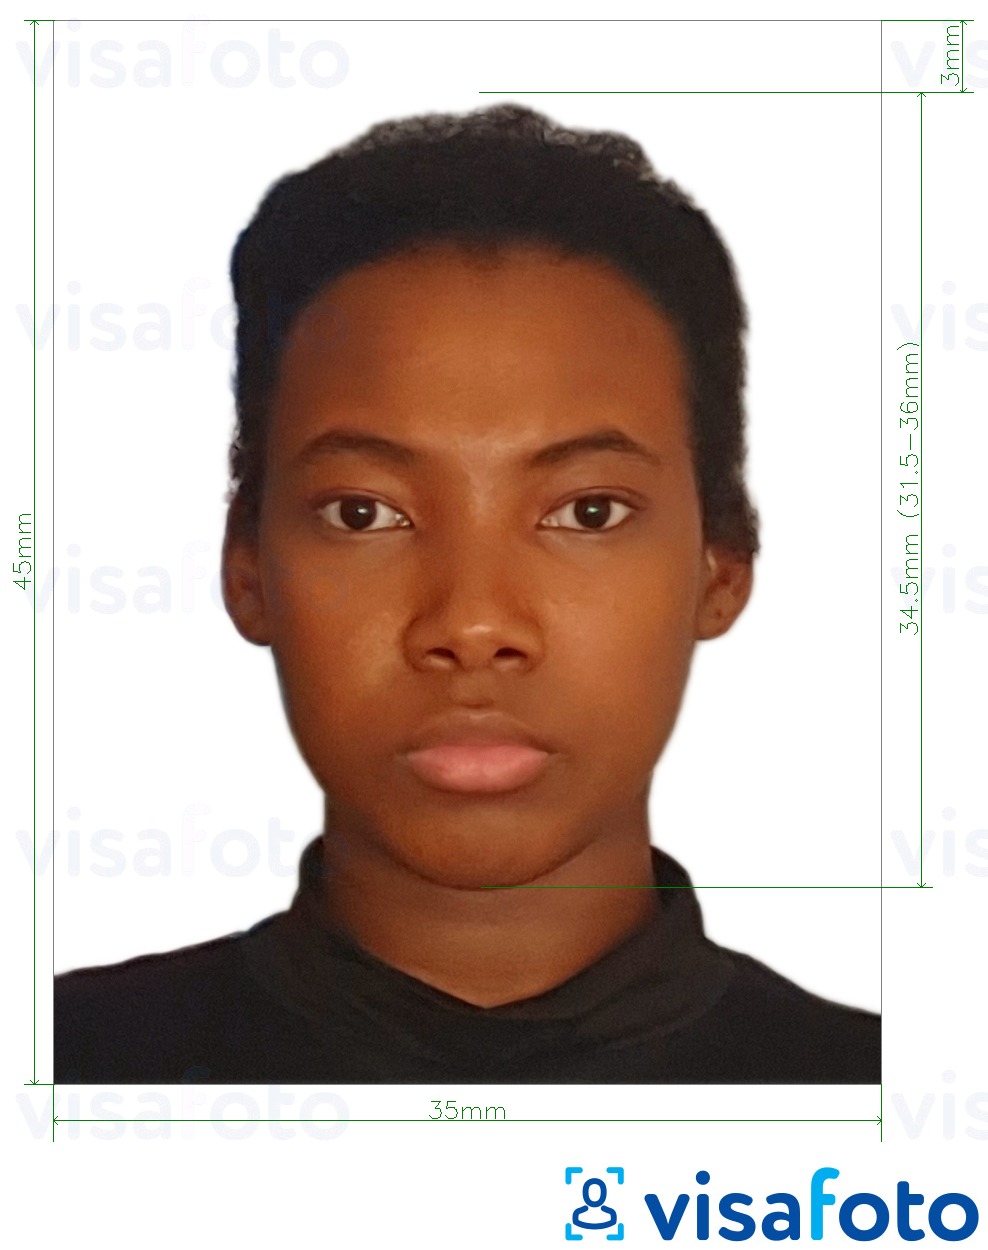 Nuotraukos pavyzdys Pusiaujo Gvinėjos viza 35x45 mm (3,5x4,5 cm) su tikslaus dydžio specifikacija